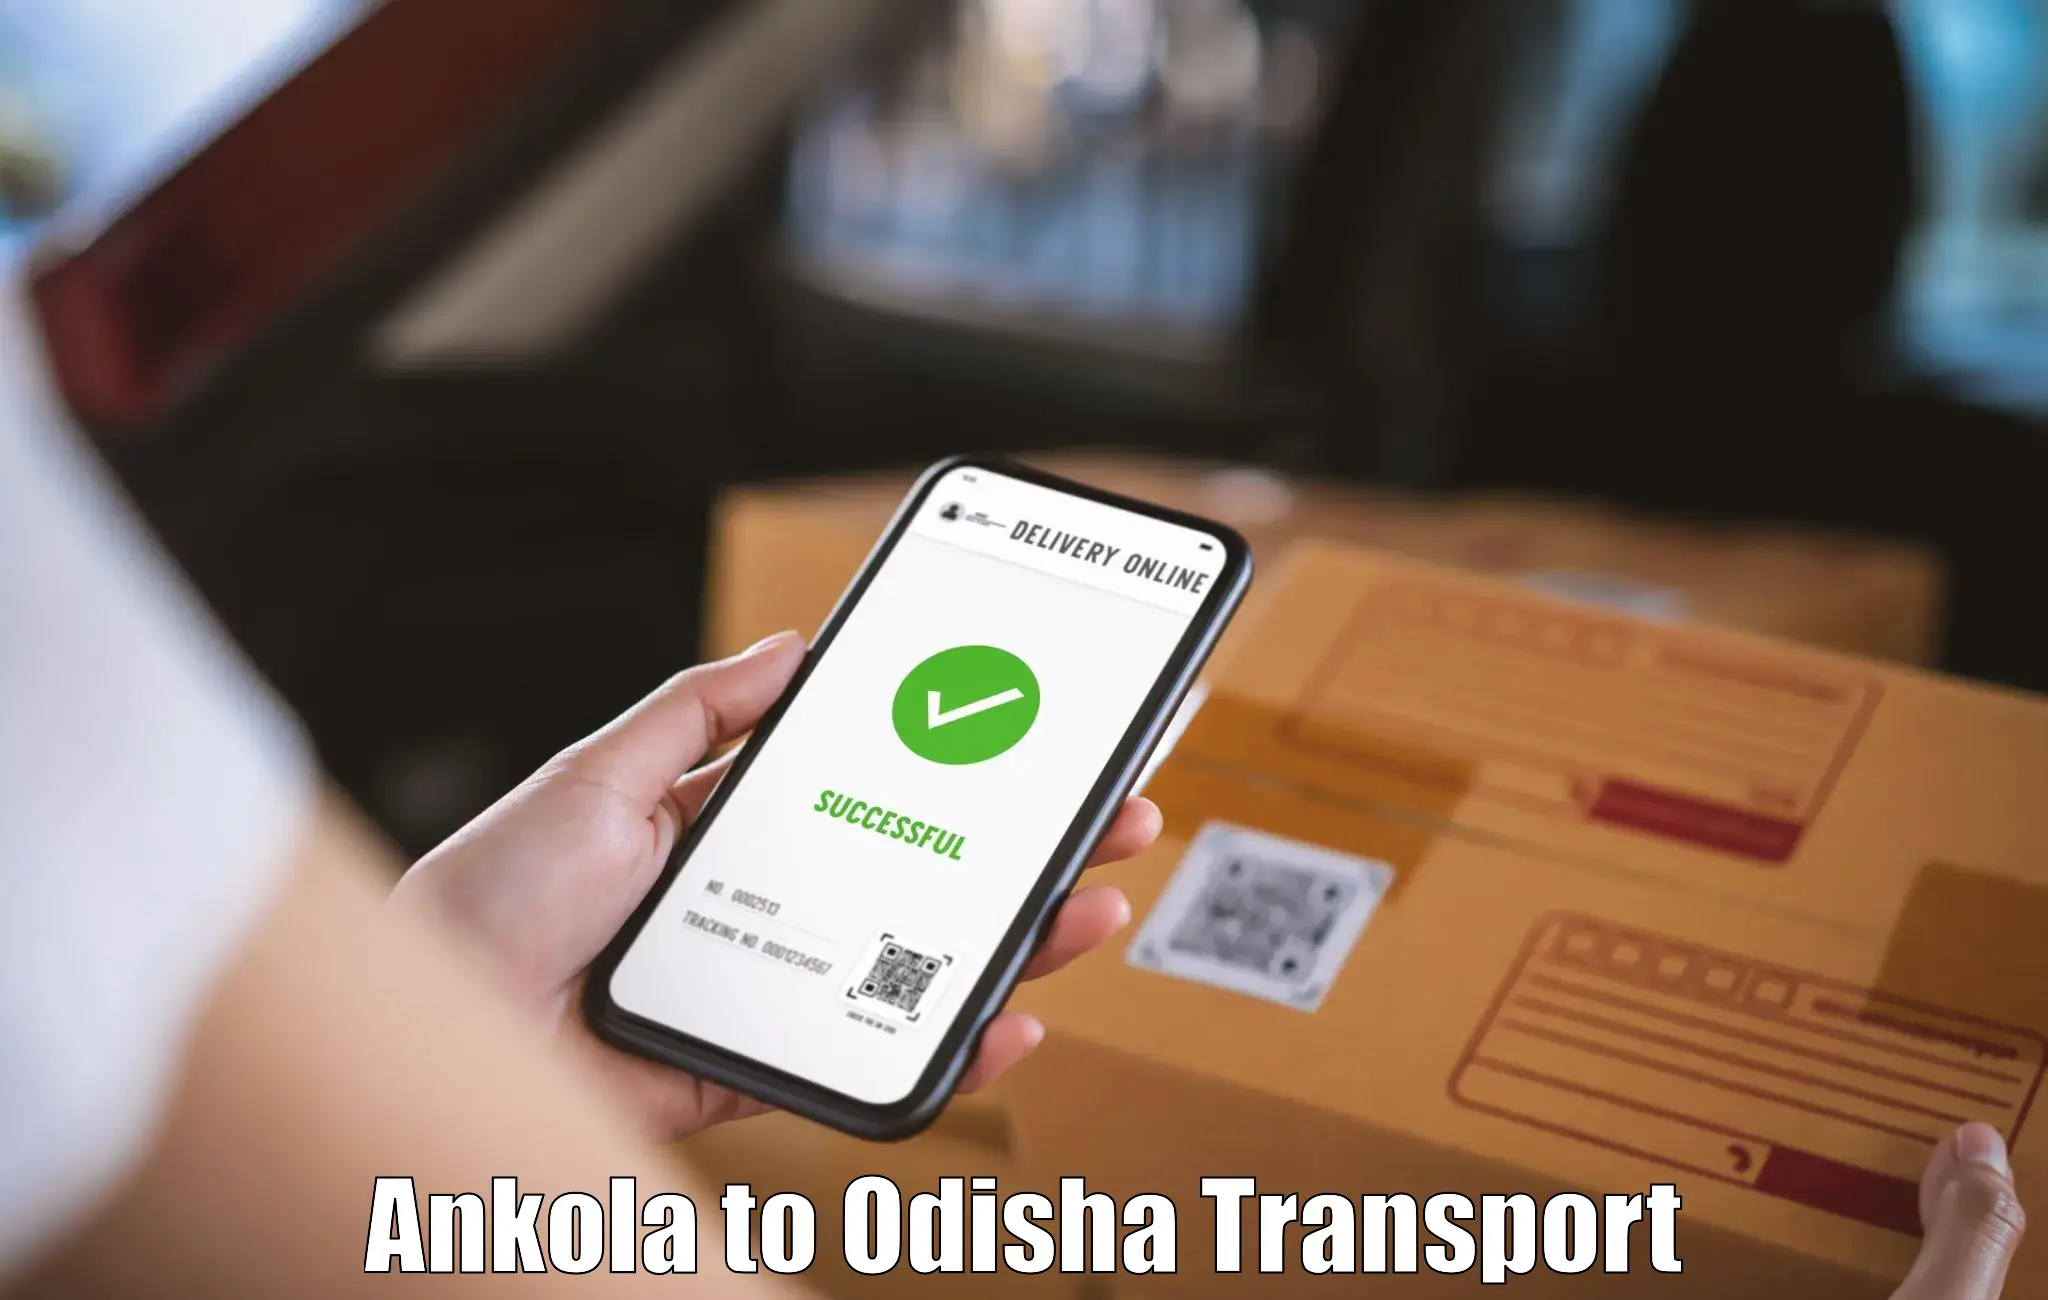 Shipping services Ankola to Tihidi